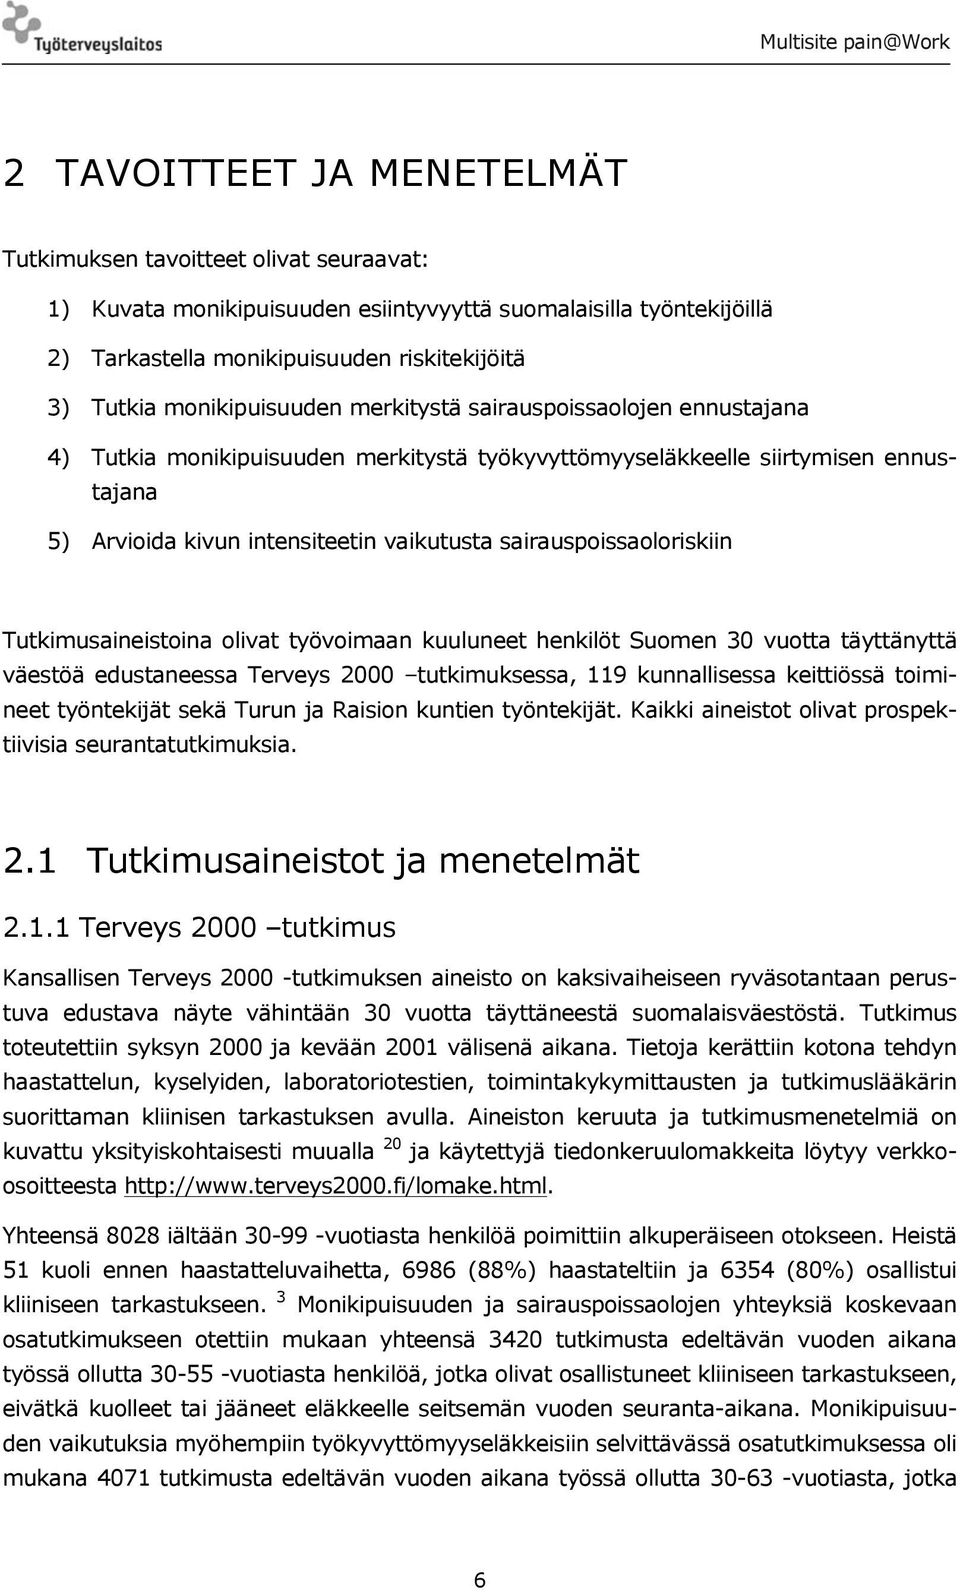 sairauspoissaoloriskiin Tutkimusaineistoina olivat työvoimaan kuuluneet henkilöt Suomen 30 vuotta täyttänyttä väestöä edustaneessa Terveys 2000 tutkimuksessa, 119 kunnallisessa keittiössä toimineet